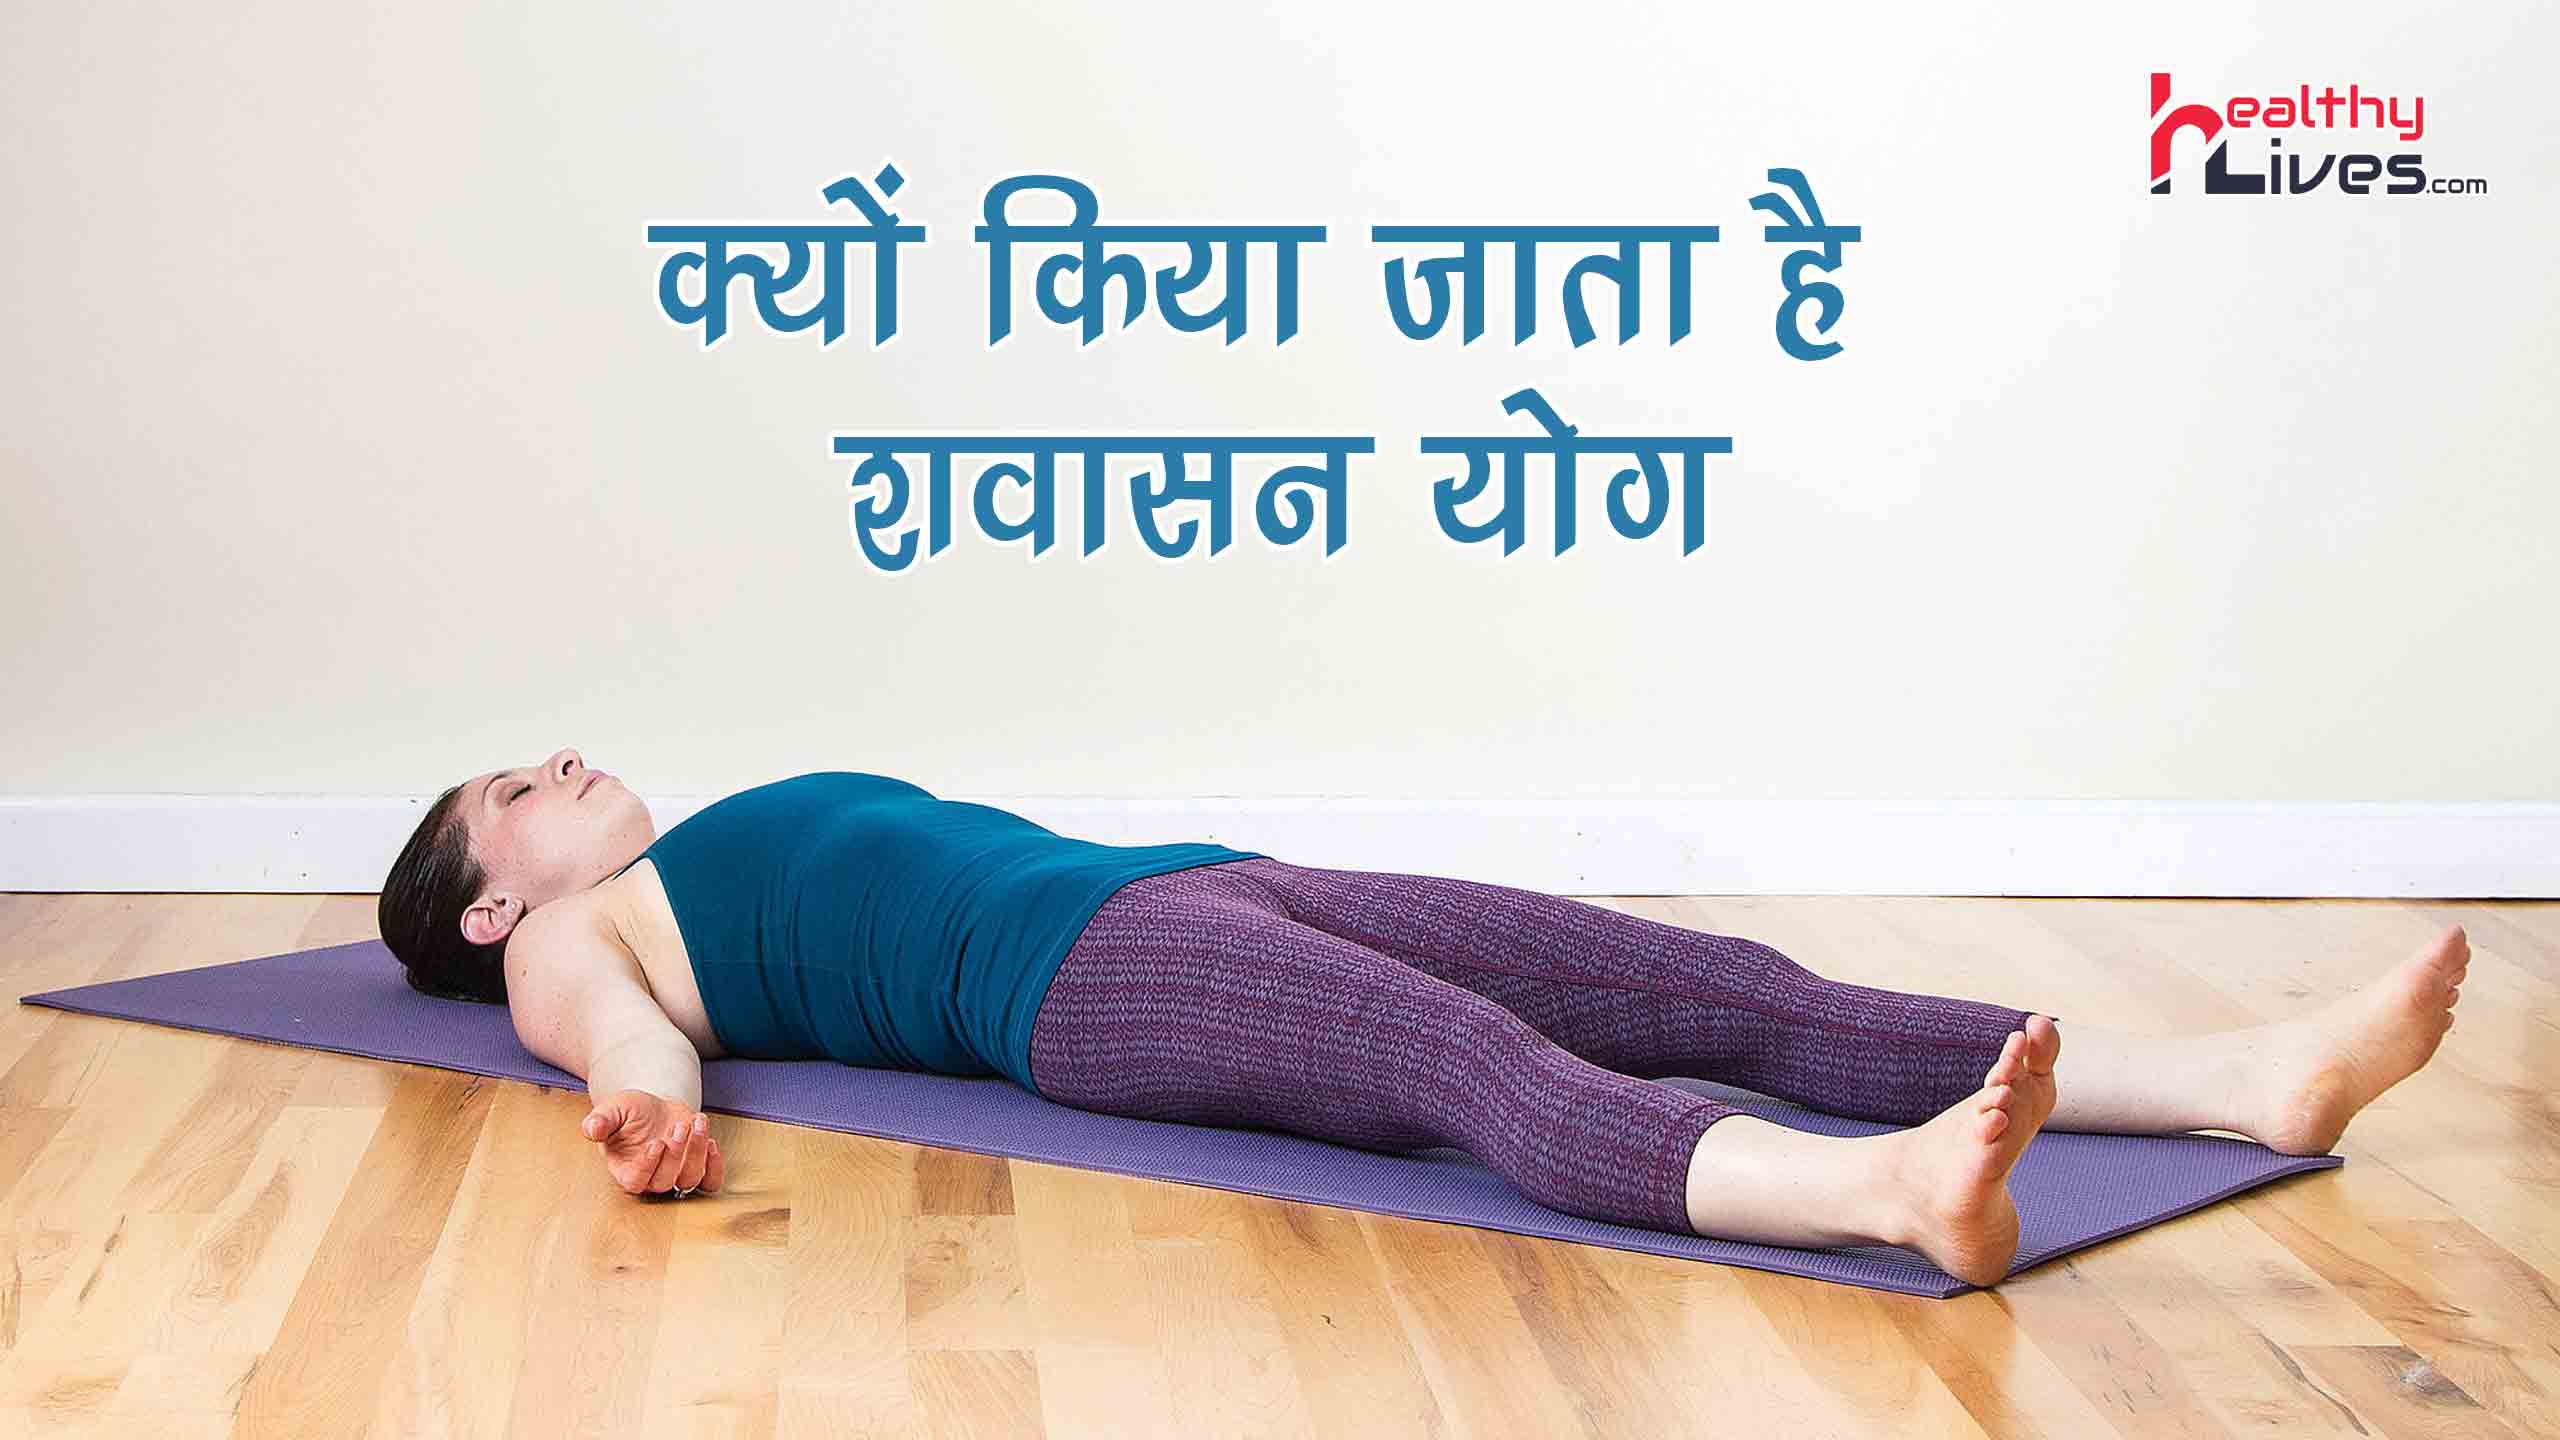 Savasana Yoga in Hindi: शवासन योग आपको रखेगा हमेशा सेहतमंद